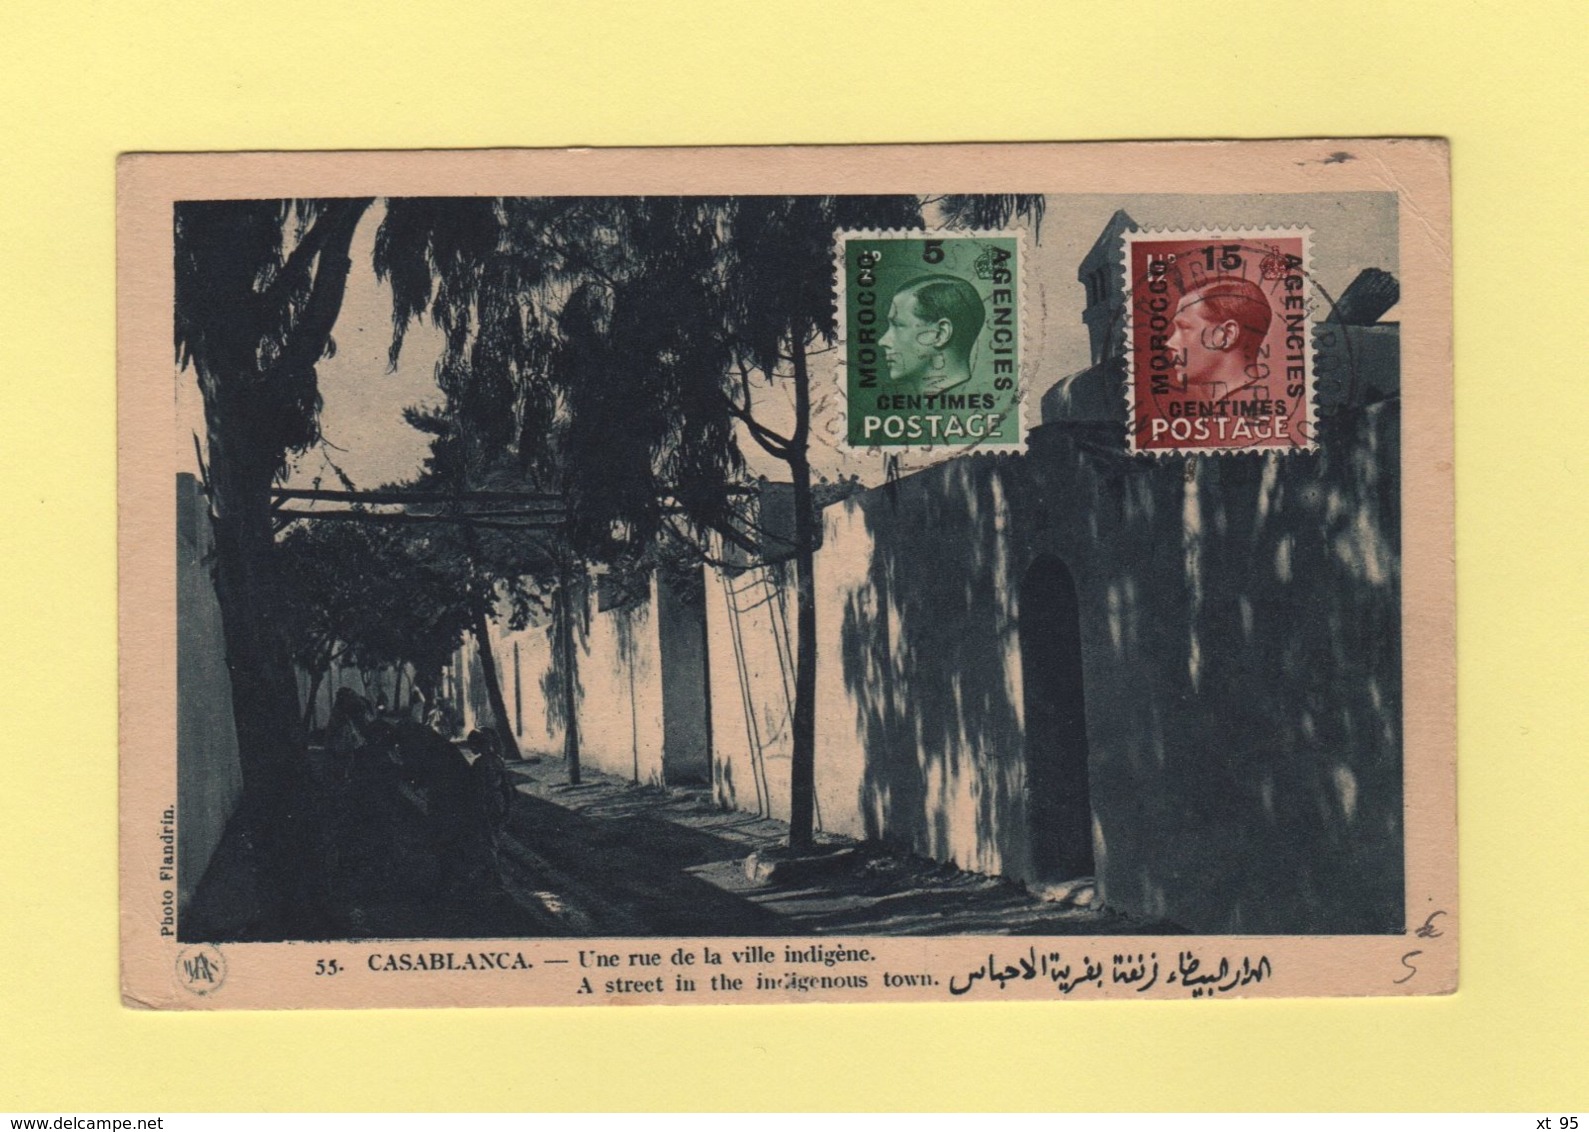 Morocco - Maroc - Casablanca Post Office - 1937 - Morocco Agencies / Tangier (...-1958)